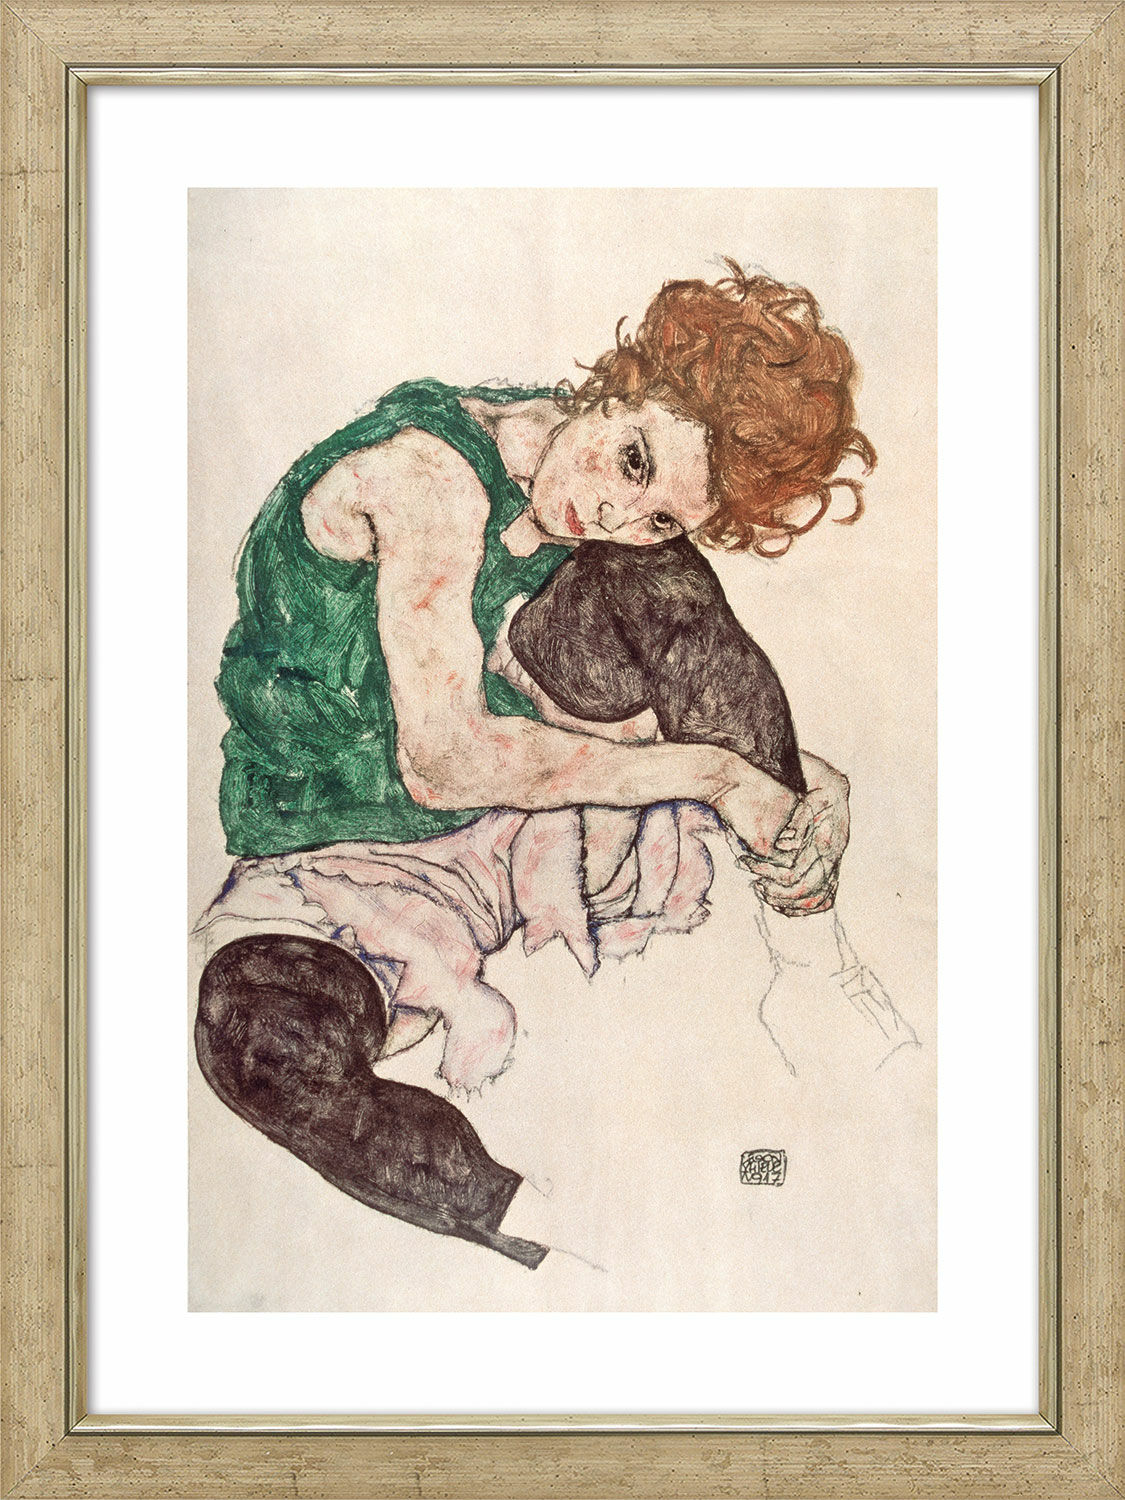 Beeld "Zittende vrouw met opgeheven knie" (1917), ingelijst von Egon Schiele